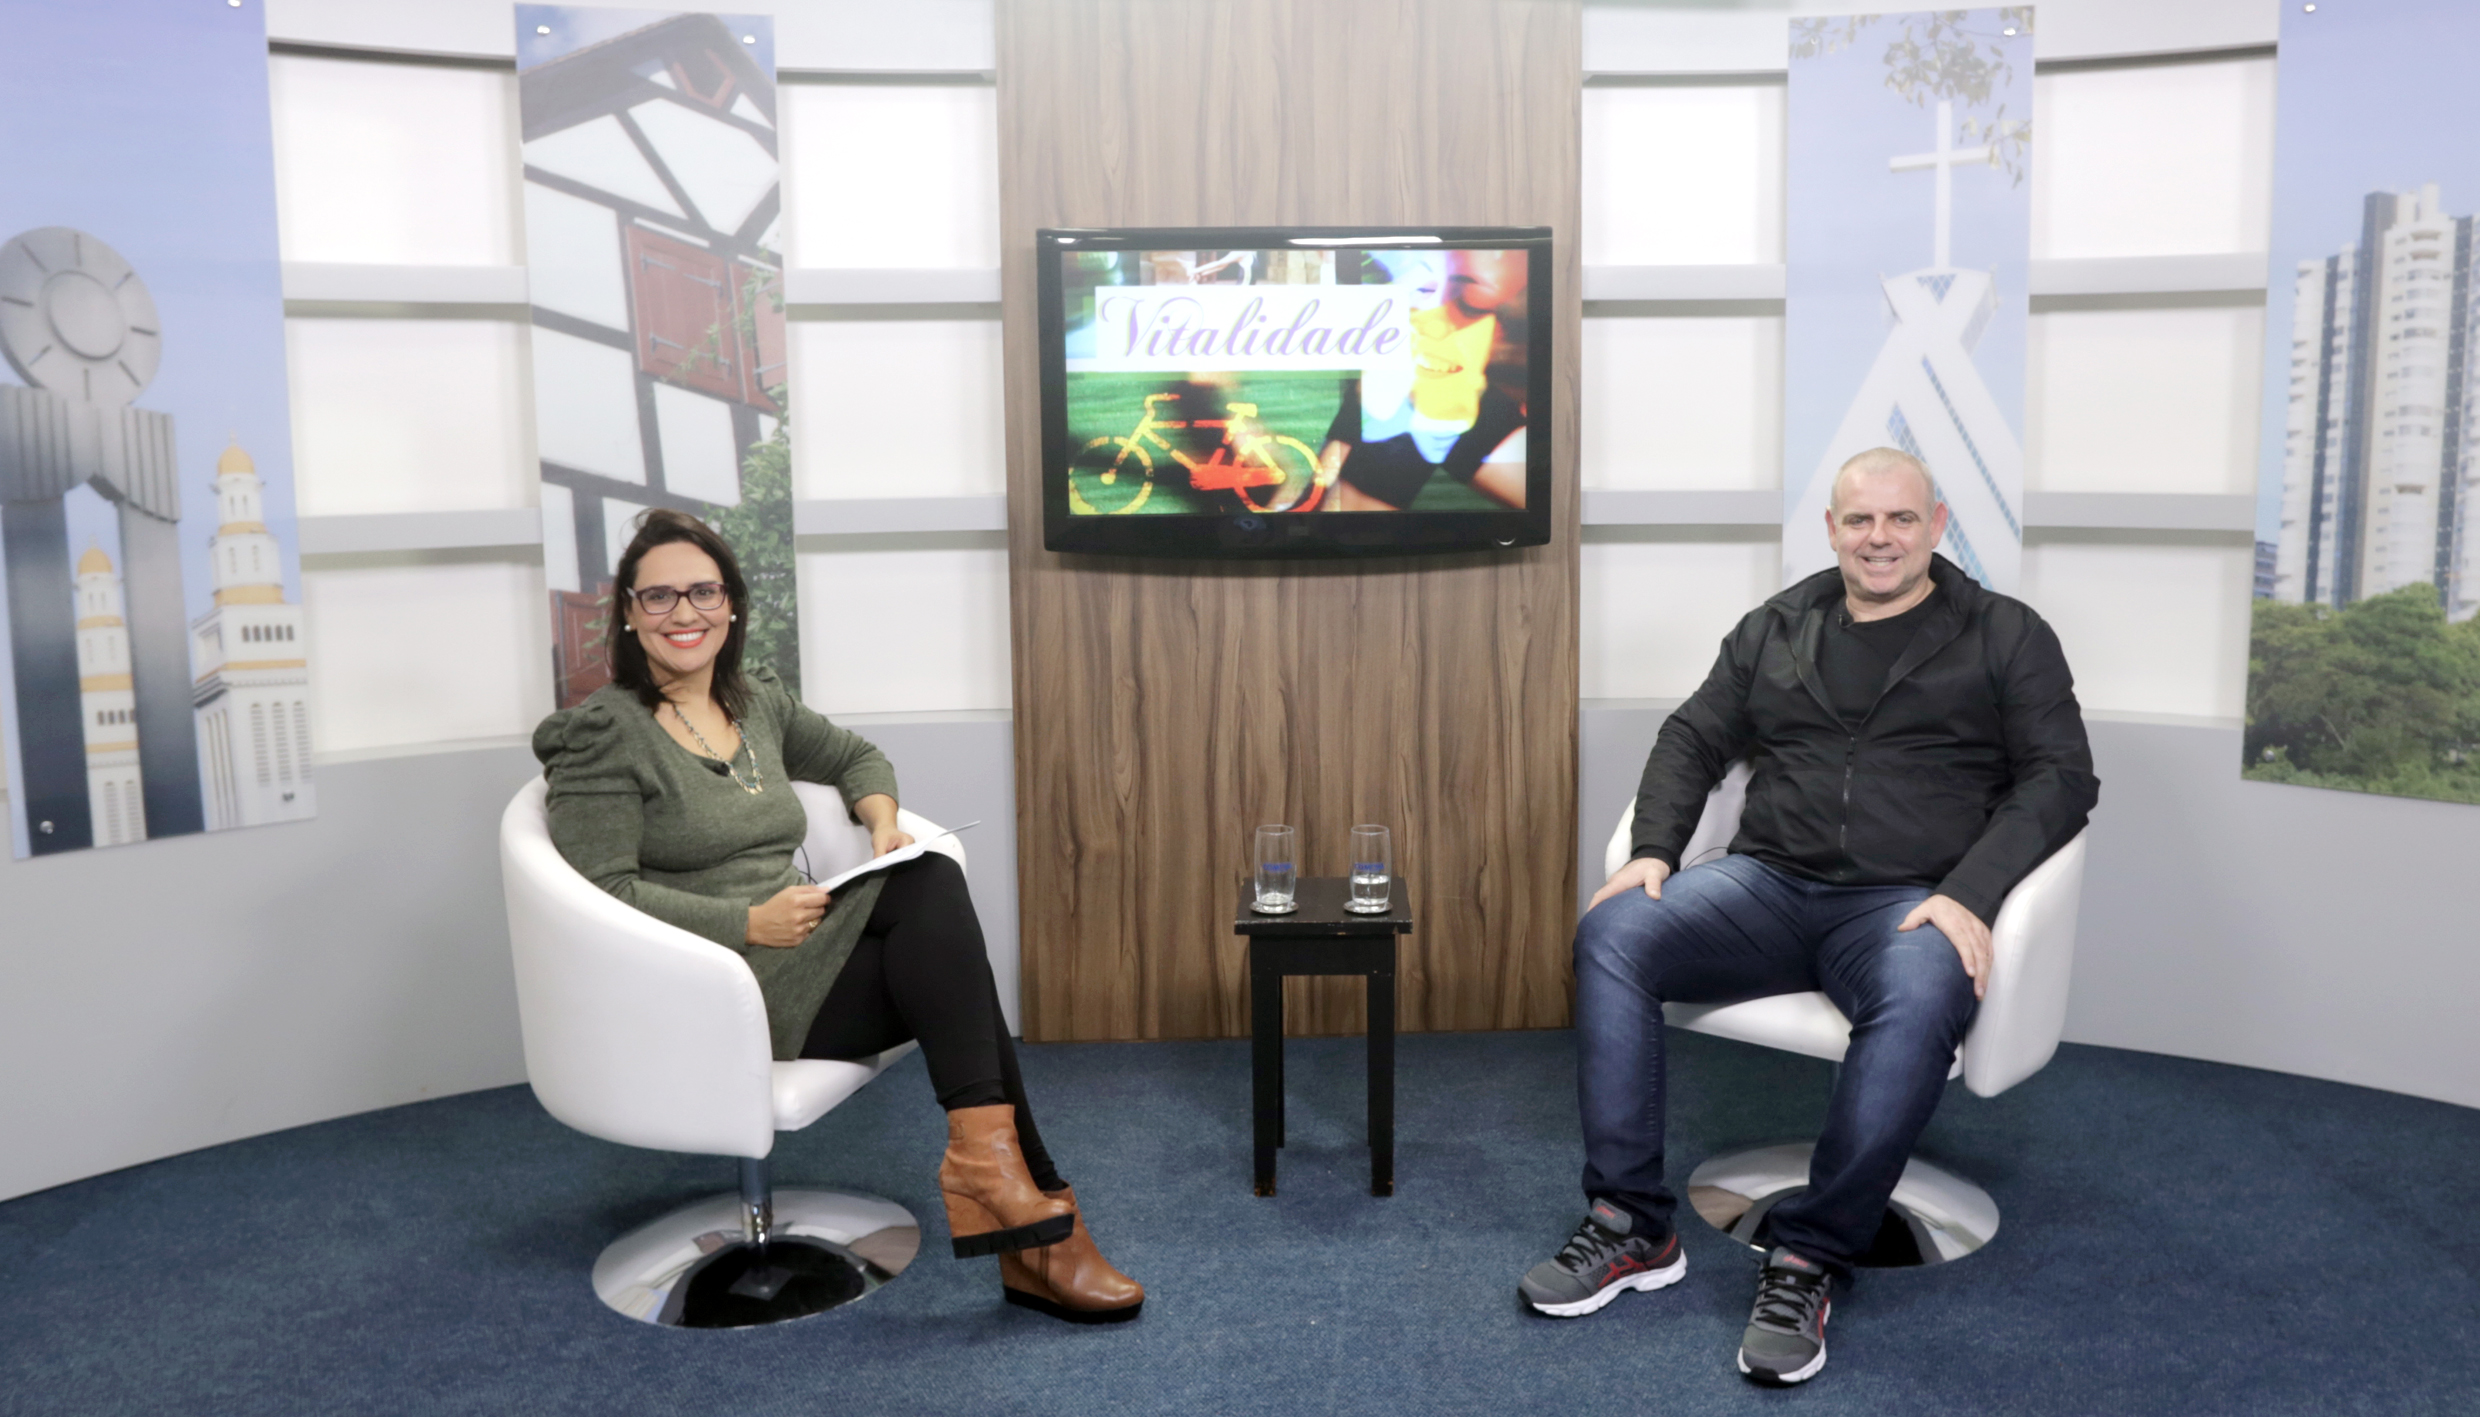 TV Câmara - Professor alerta sobre os perigos do sedentarismo no programa Vitalidade